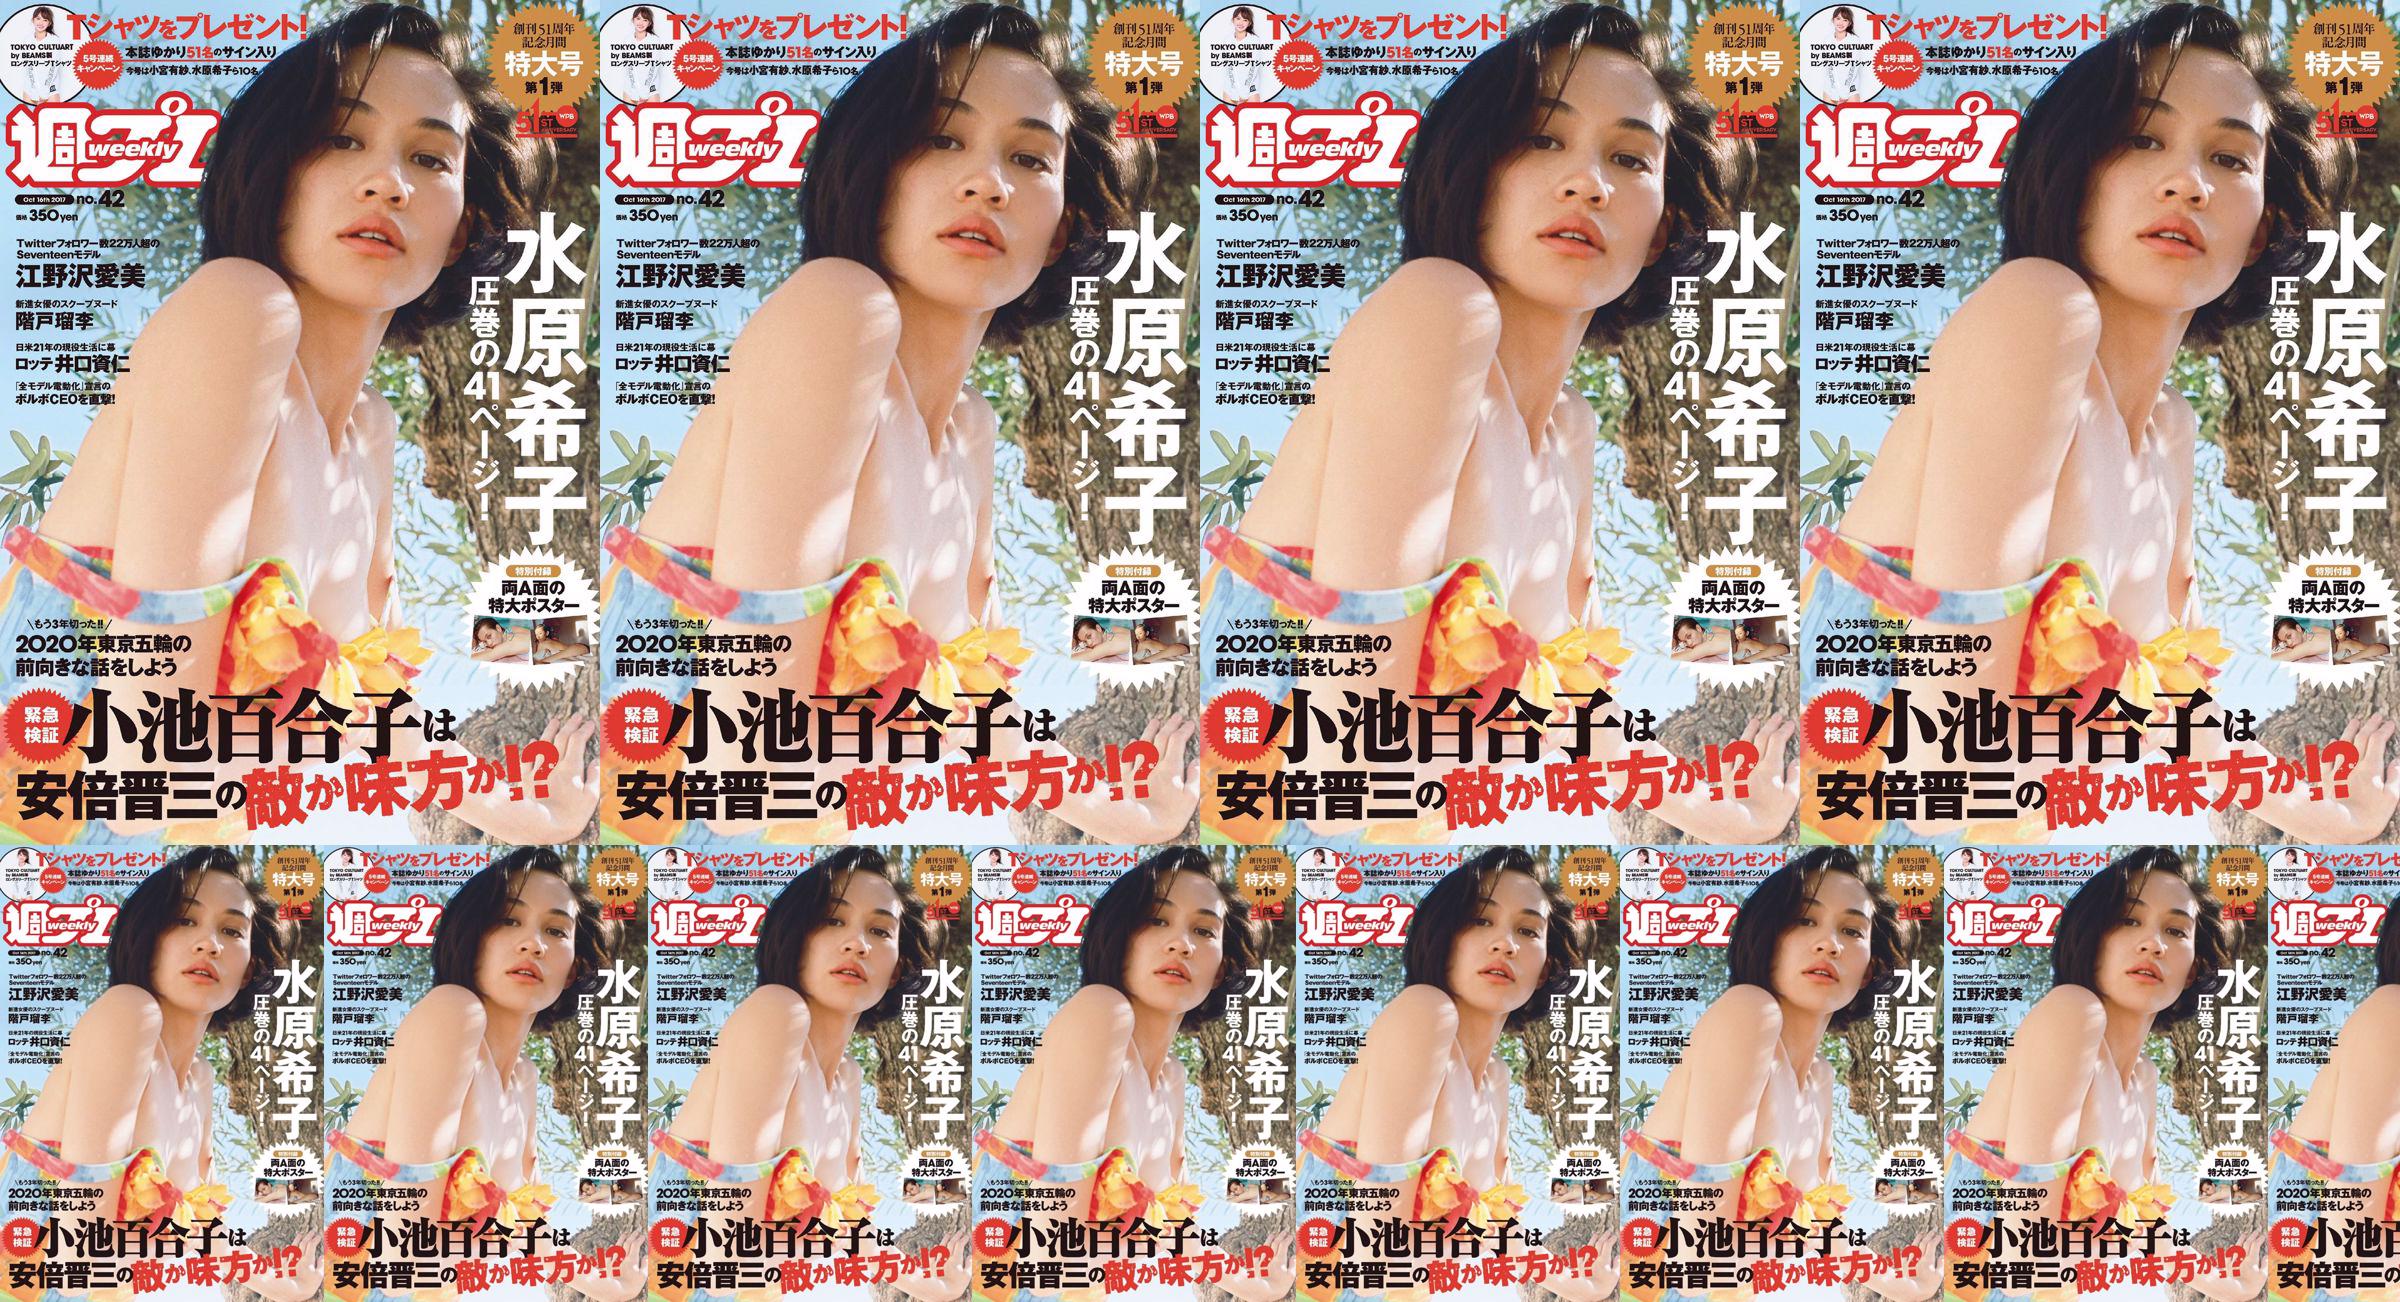 Kiko Mizuhara Manami Enosawa Serina Fukui Miu Nakamura Ruri Shinato [Weekly Playboy] 2017 No.42 Photo Magazine No.fbb8a0 Pagina 1